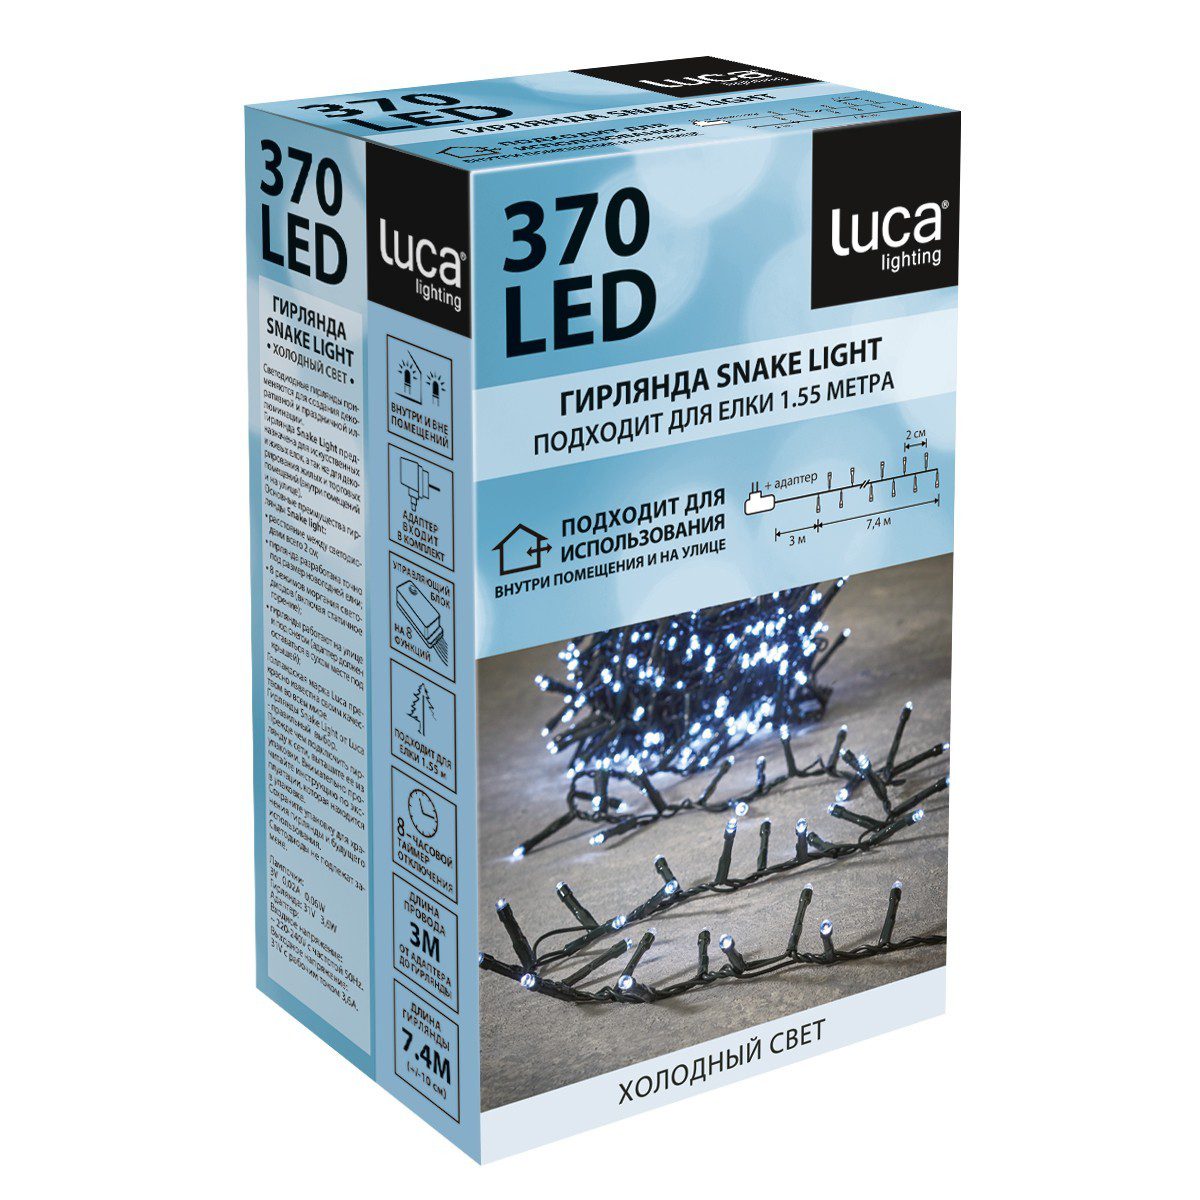 Гирлянда Luca Snake light холодный свет (370 ламп, длина гирлянды 740 см) для ёлки 120-155 см